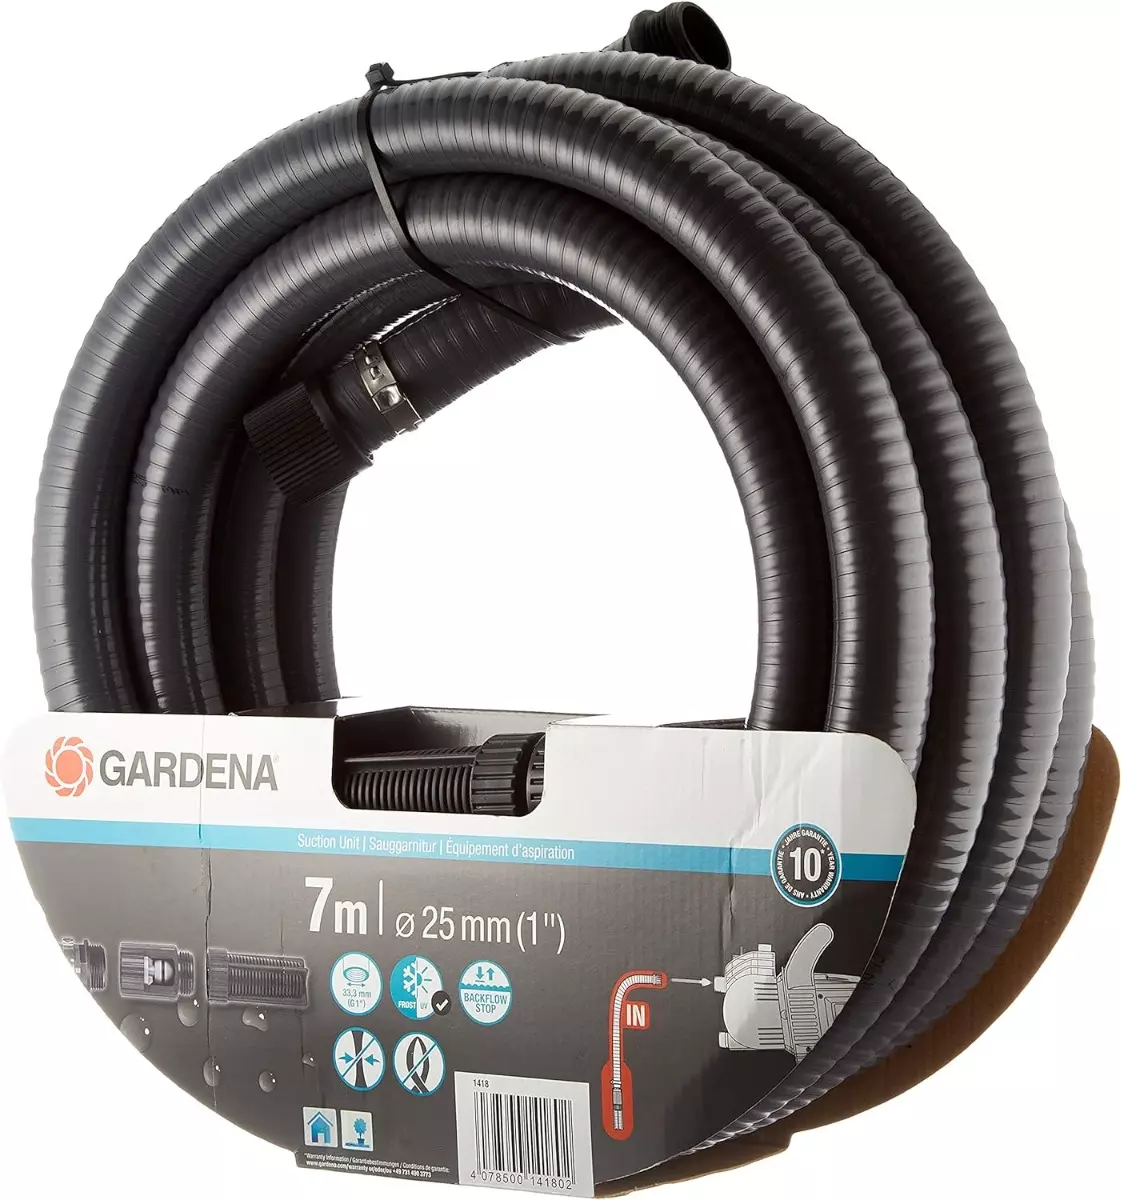 Equipement d’aspiration - 7 m - GARDENA - avec filtre d'aspiration et clapet anti-retour - 1418-20